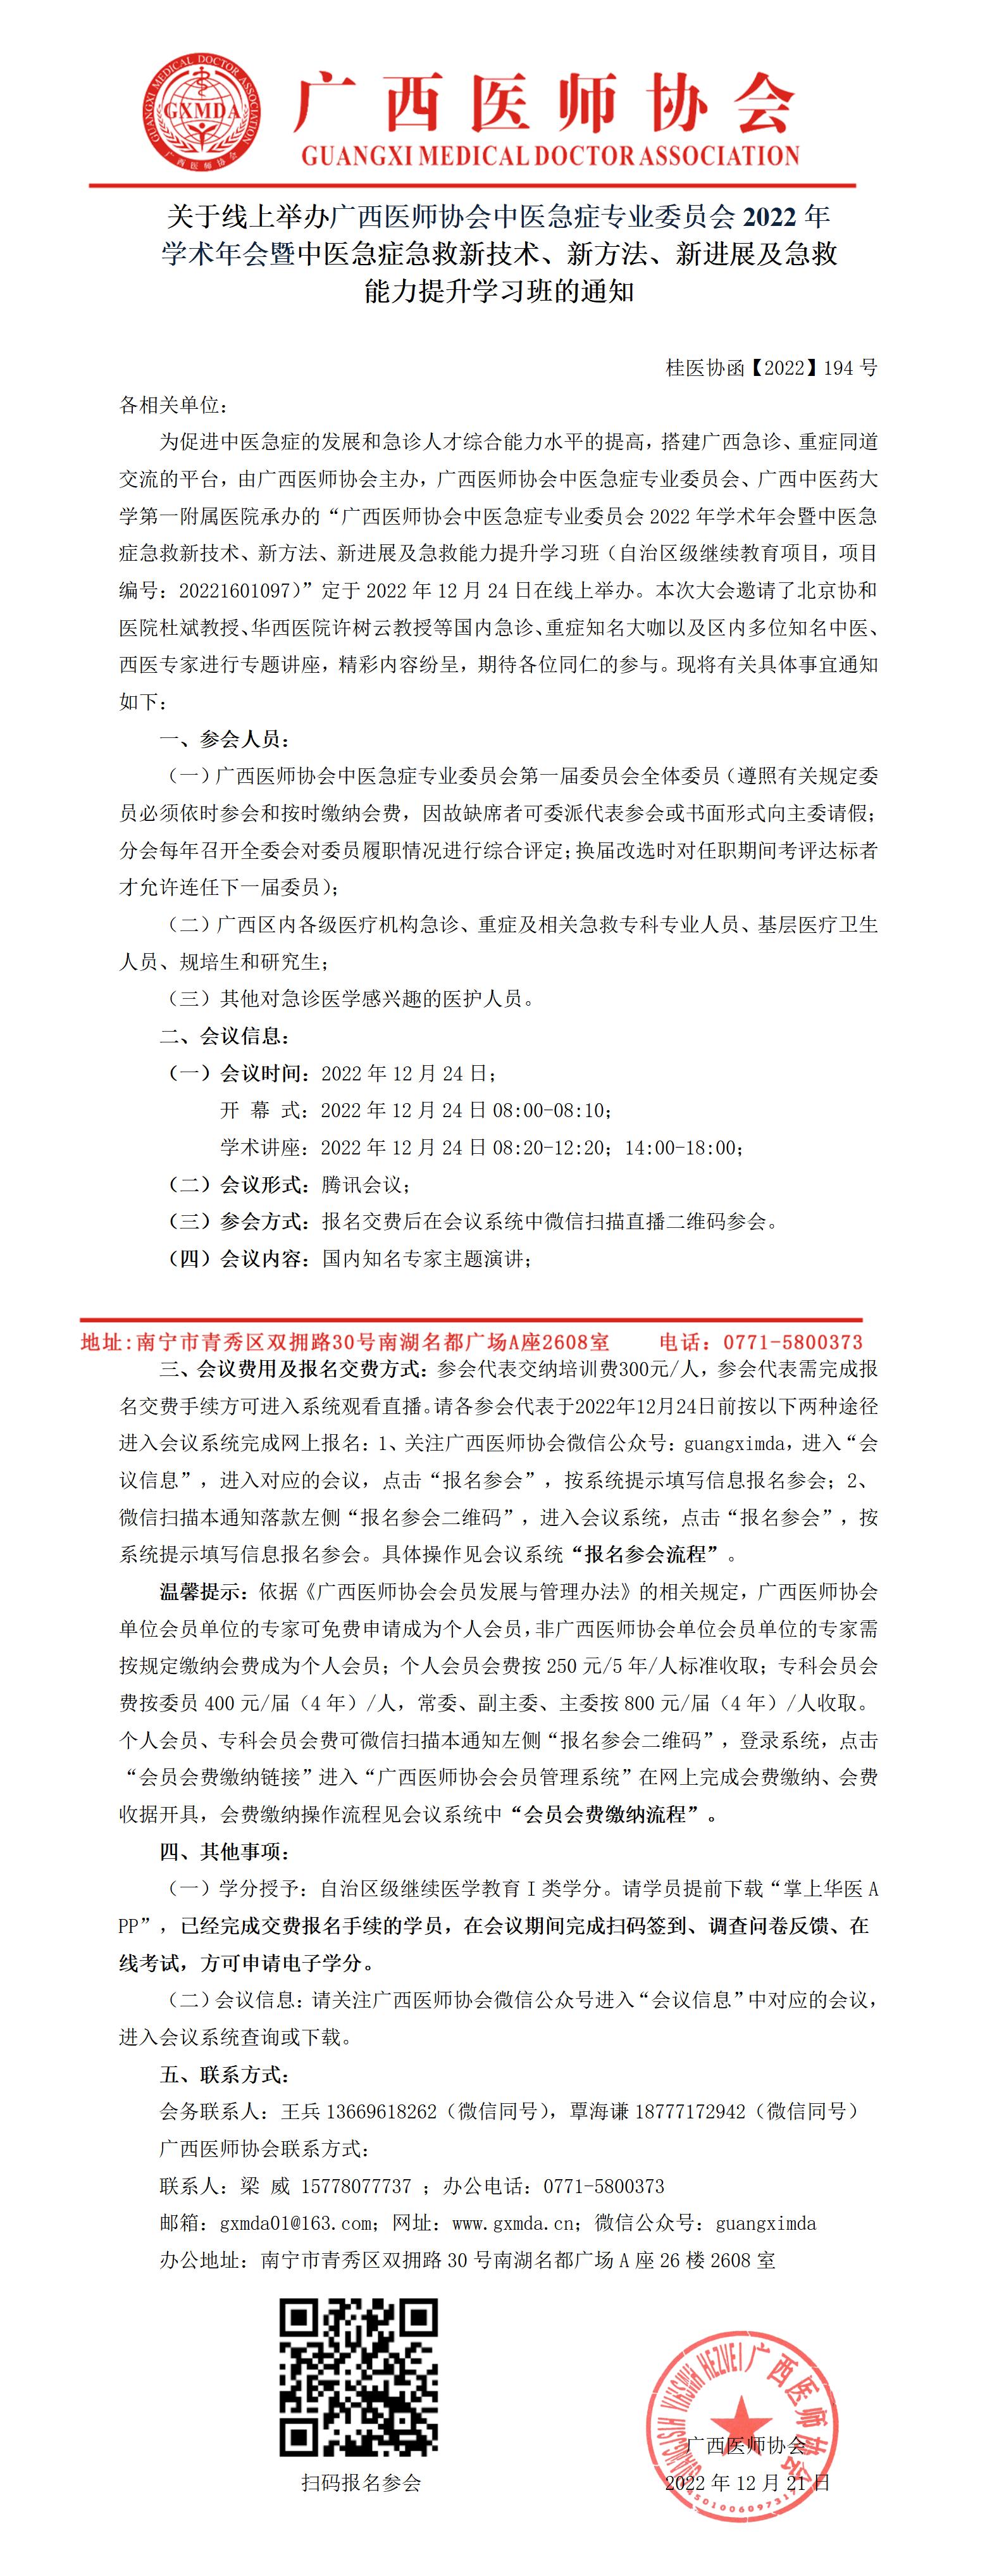 【2022】194号 关于举办广西医师协会中医急症专业委员会2022年学术年会的通知_01.jpg